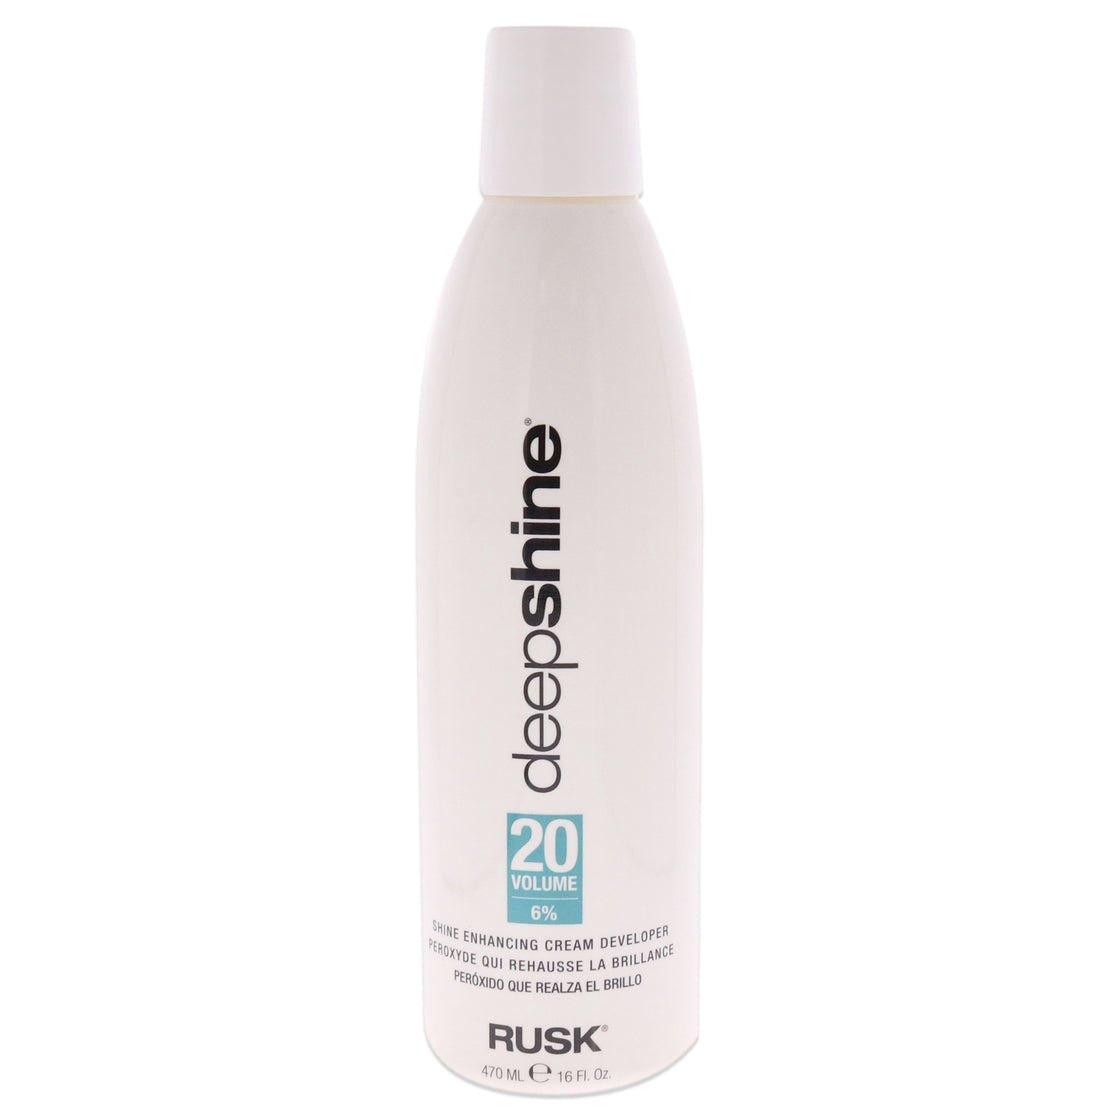 Deepshine Enhancing Cream Developer 20 Volume by Rusk for Unisex - 16 oz Lightener